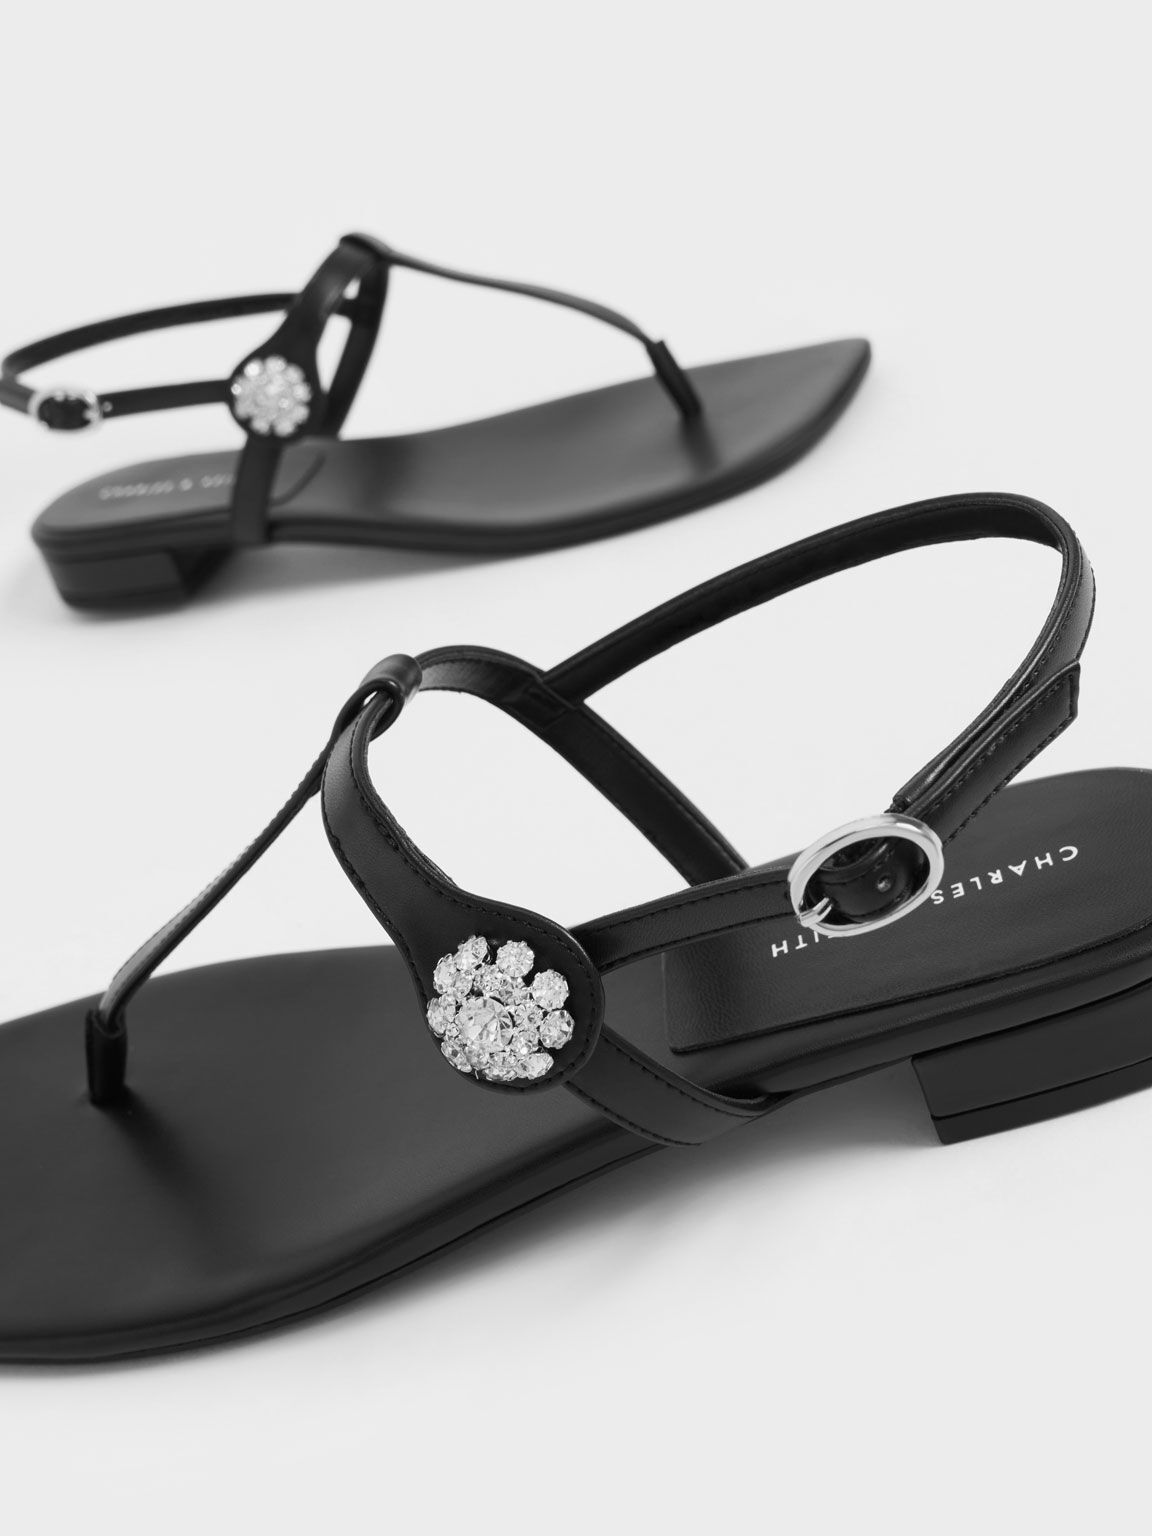 Gem-Embellished Thong Sandals, Black, hi-res